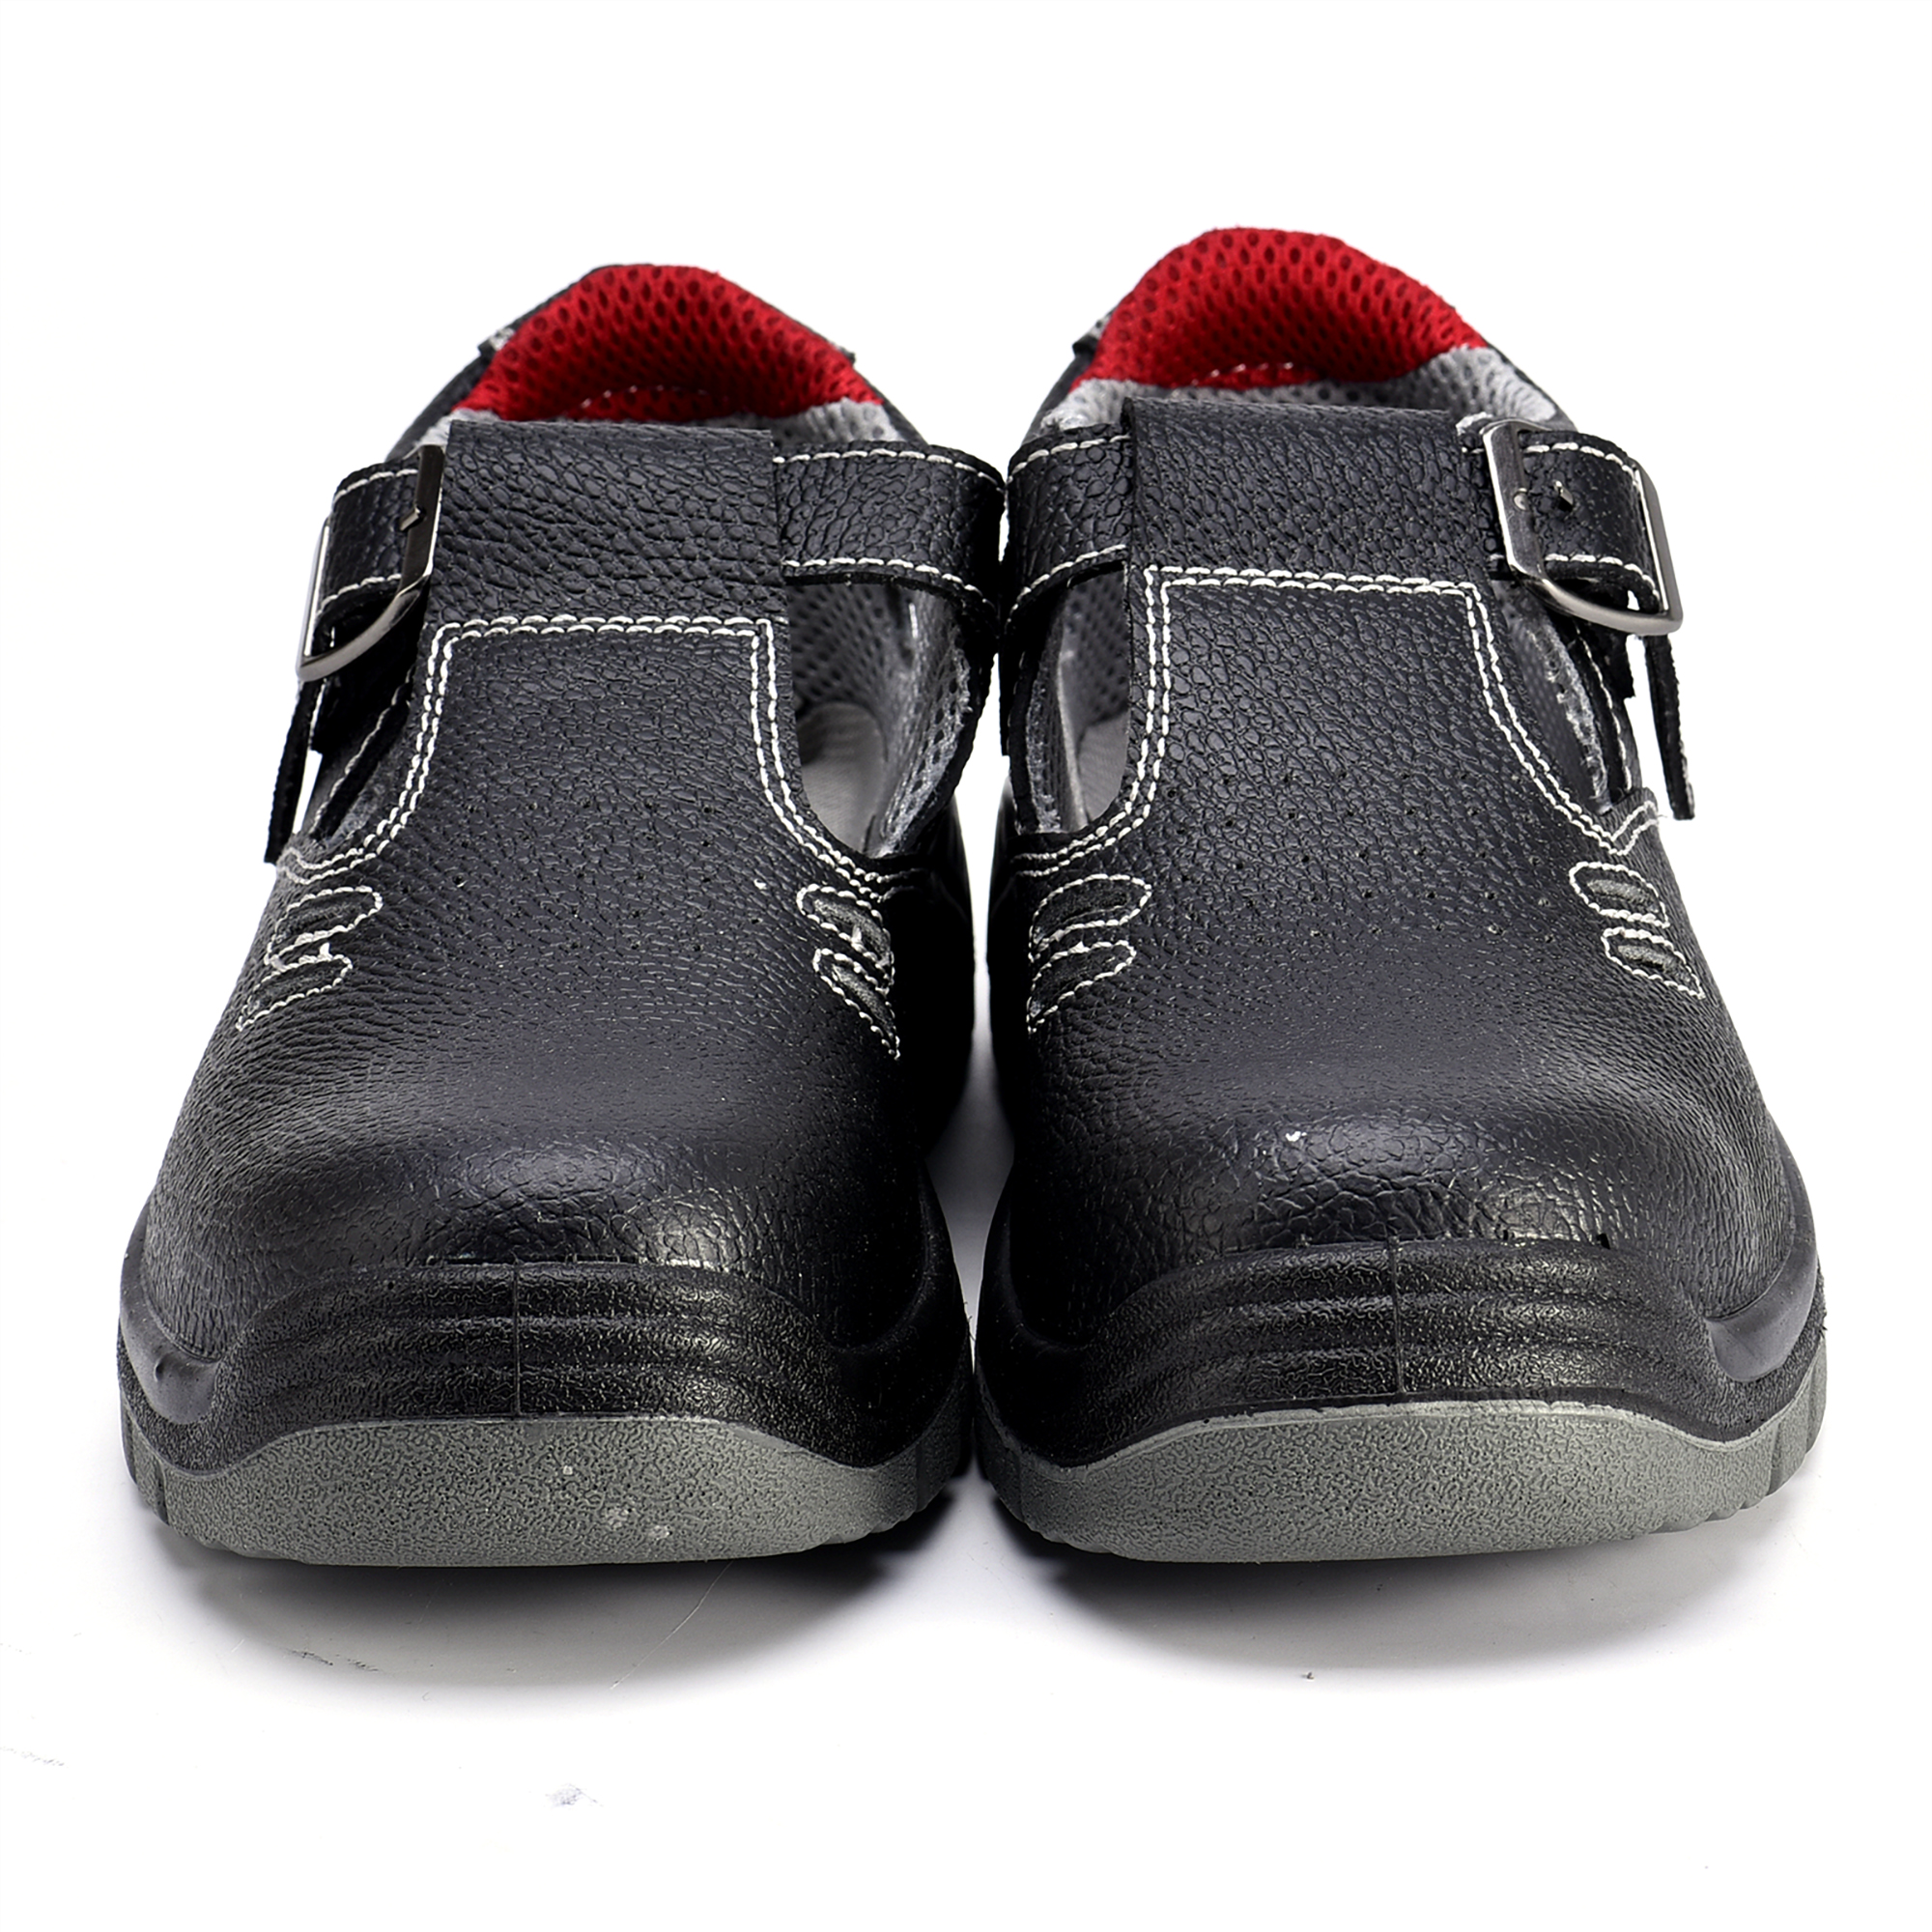 Защитная обувь высокого качества Сабо L-7216